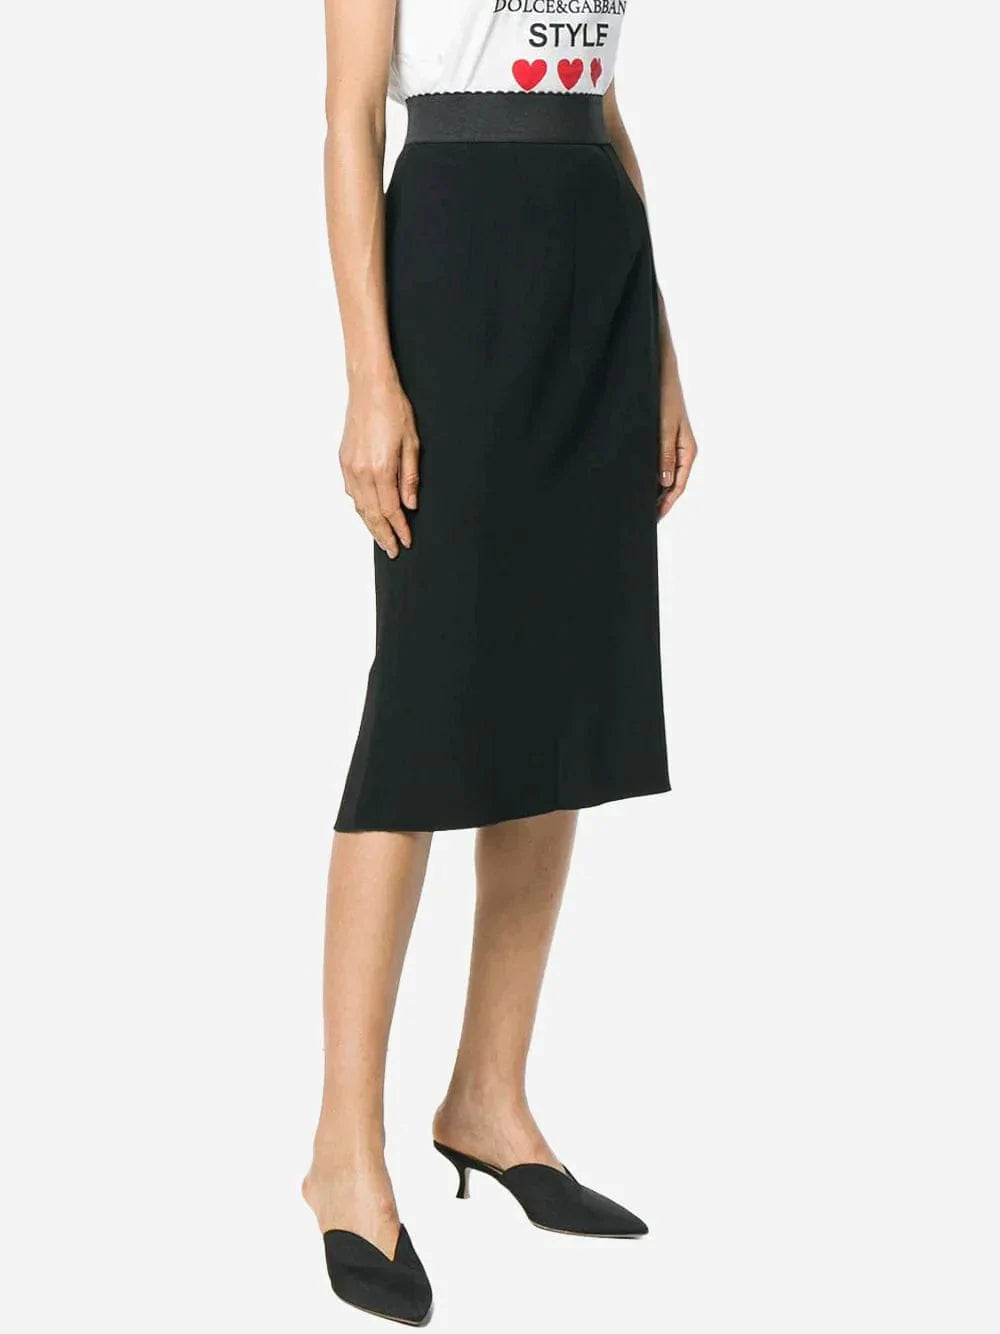 Dolce & Gabbana High Waist Pencil Cut Skirt